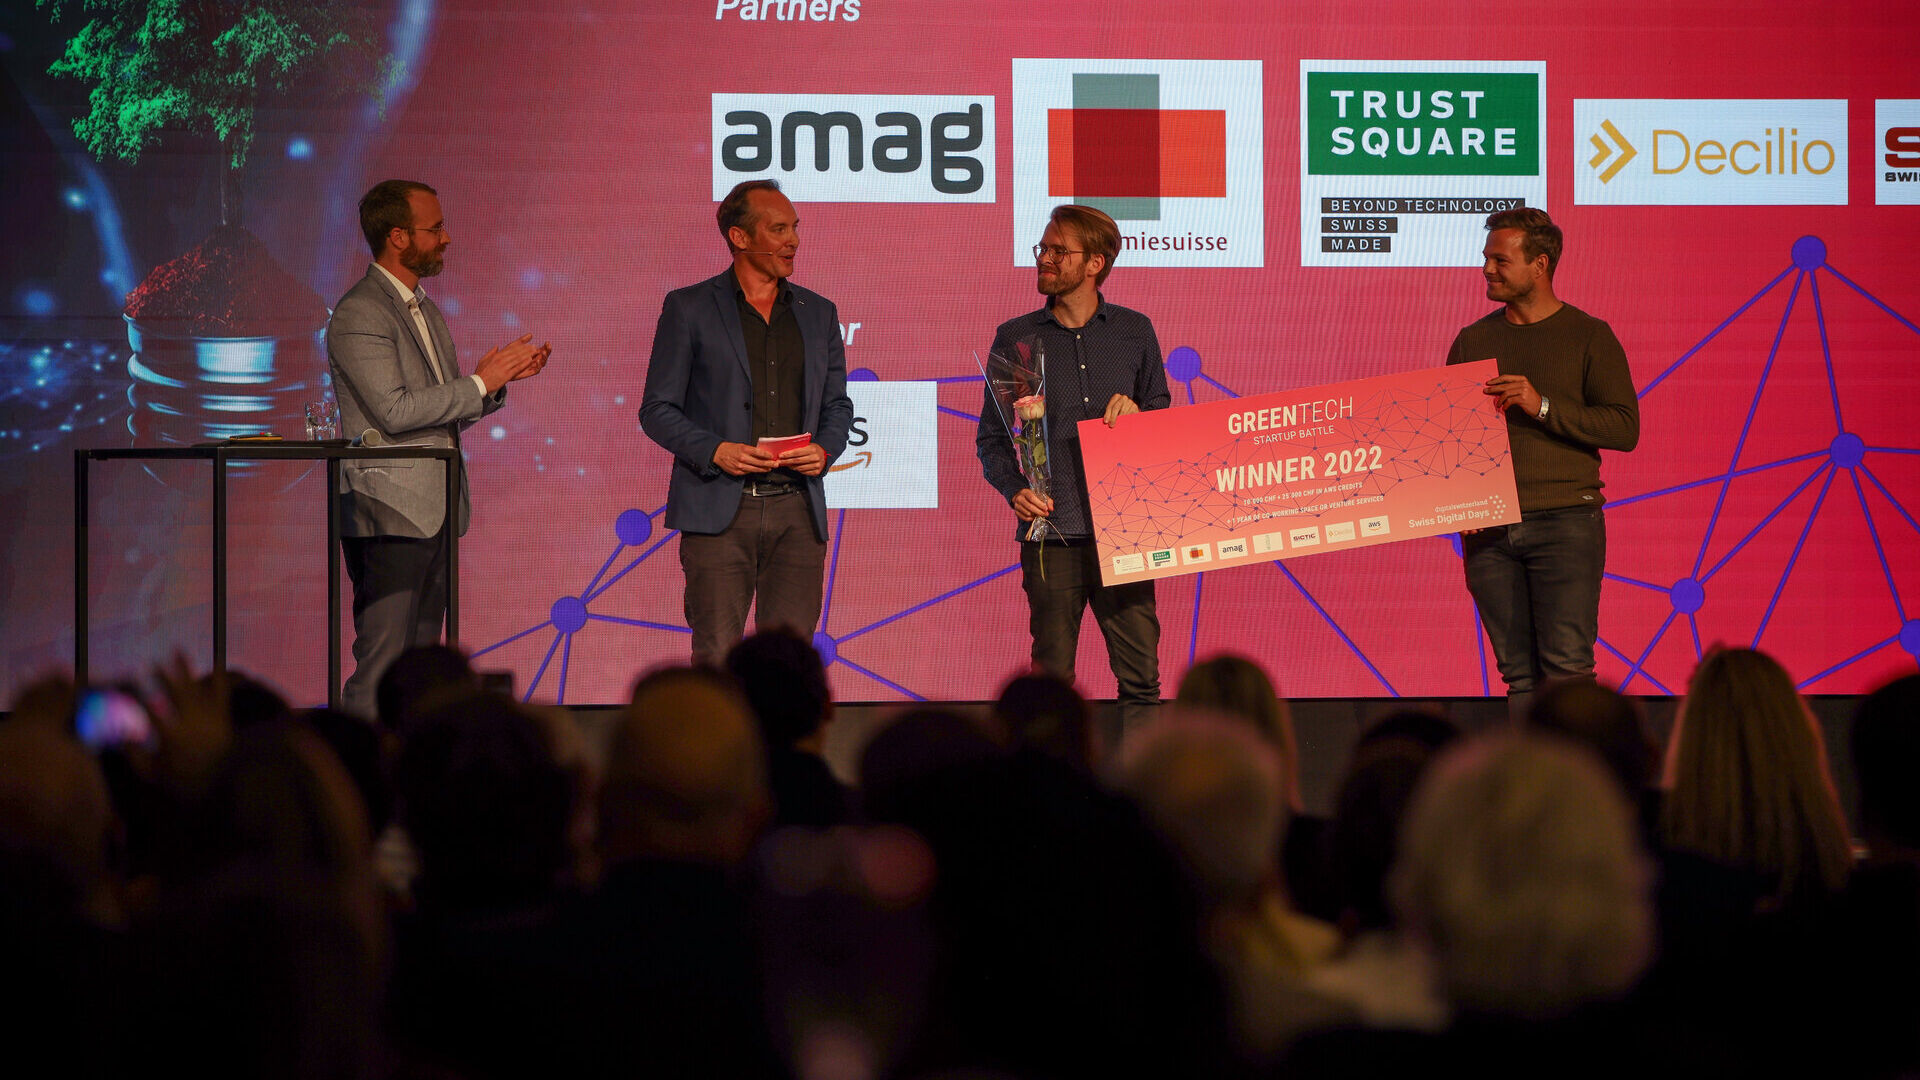 Giornate Digitali Svizzere: l’evento conclusivo delle “Giornate Digitali Svizzere” 2022 alla Freiruum di Zugo (Zugo) il 27 ottobre: la premiazione dell’iniziativa “Greentech Startup Battle” con la vittoria di viboo